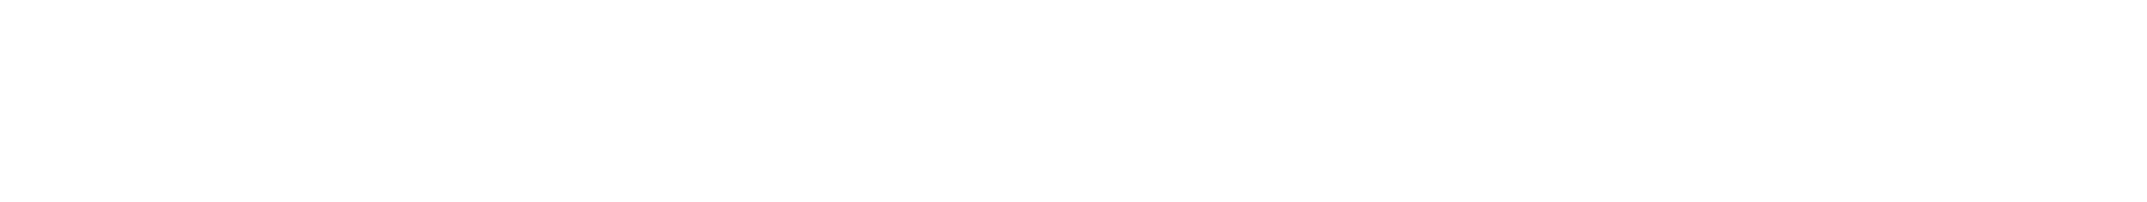 digital sports contents